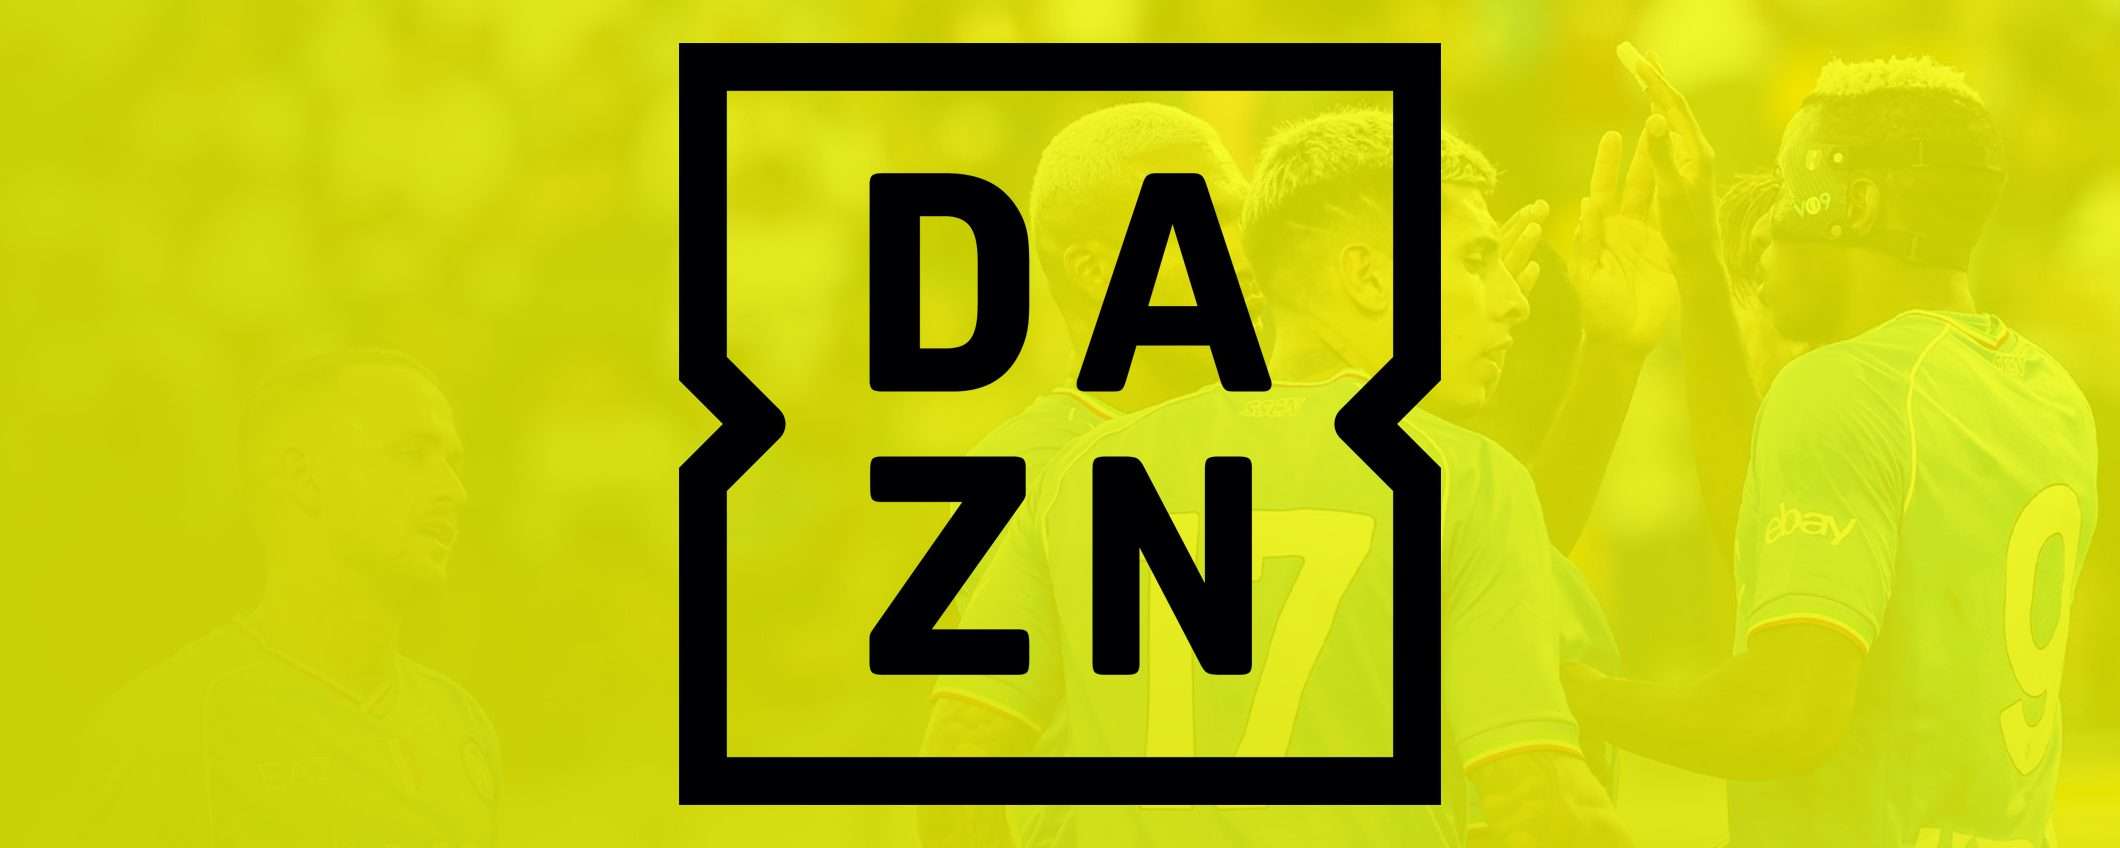 DAZN: contenuti gratis senza abbonamento